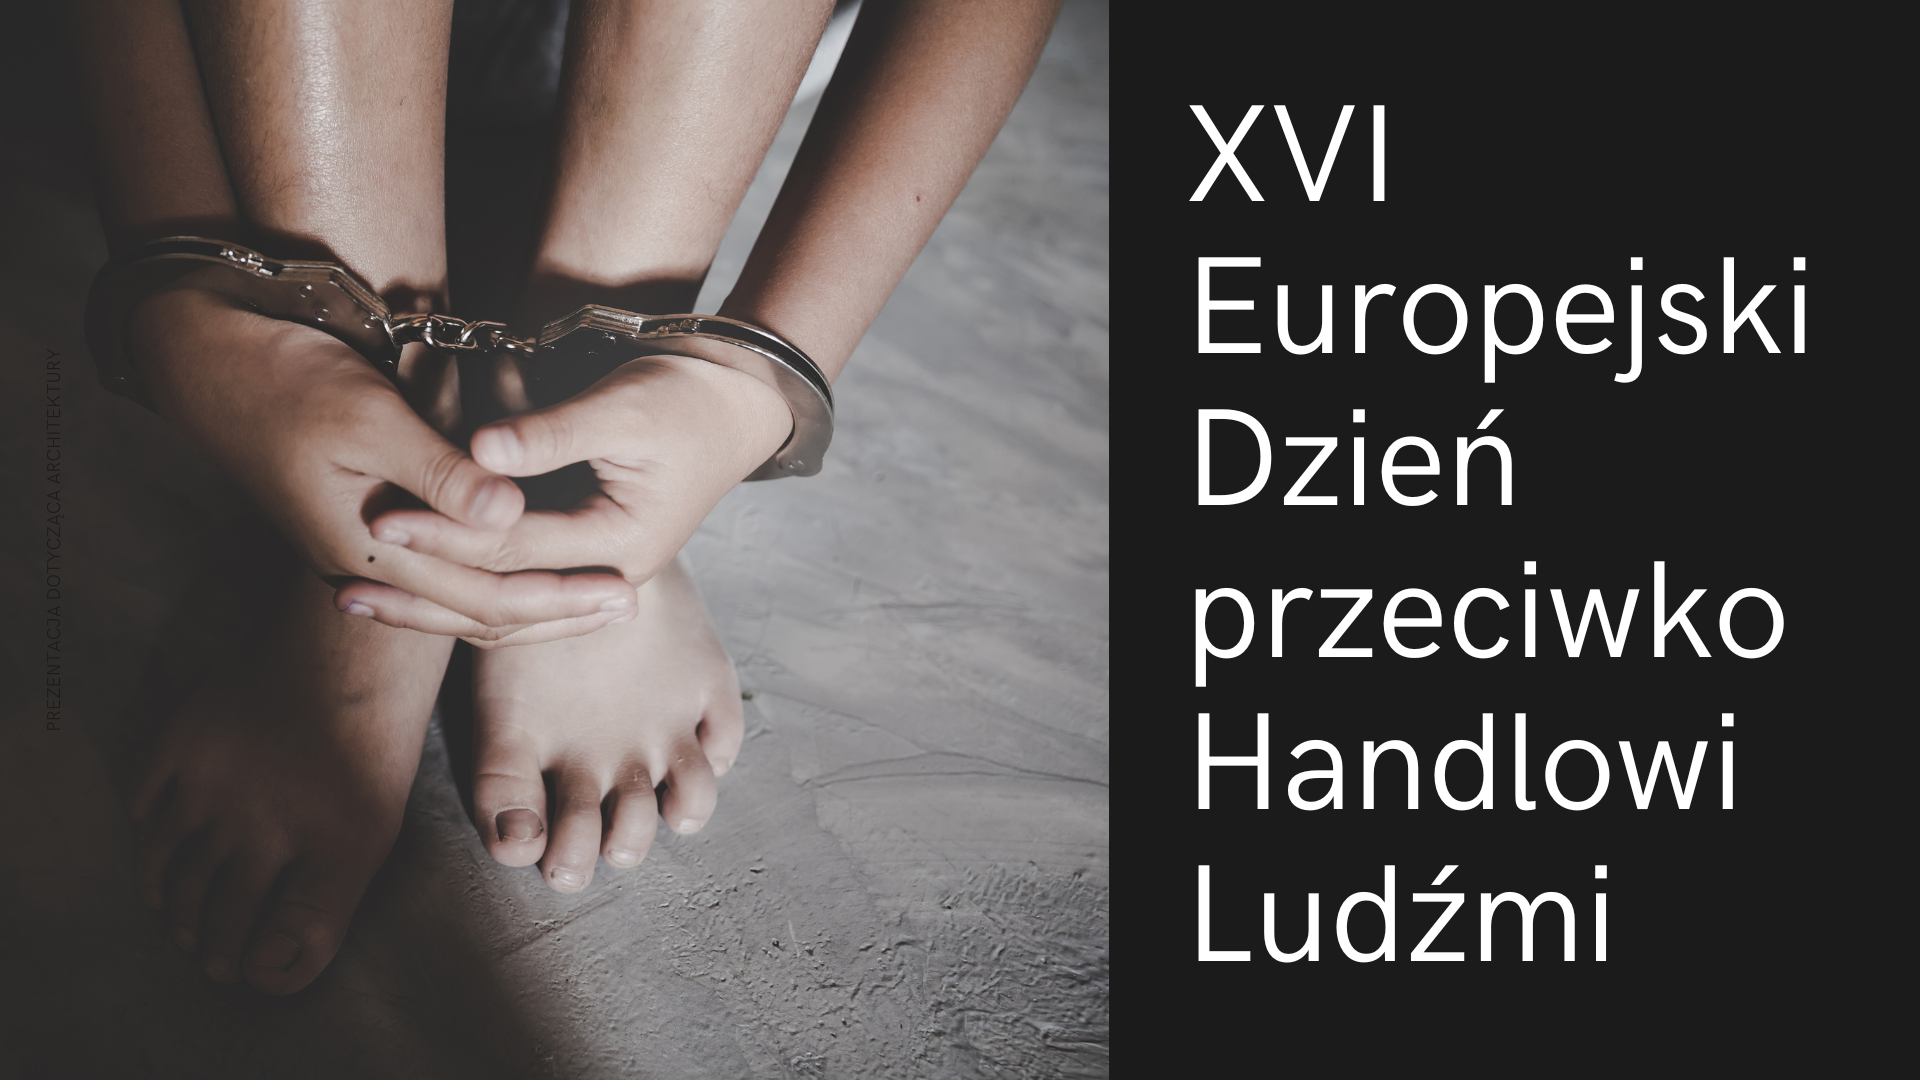 Szesnasty Europejski Dzień przeciwko Handlowi Ludźmi – 18 października 2022 [INFORMACJA]